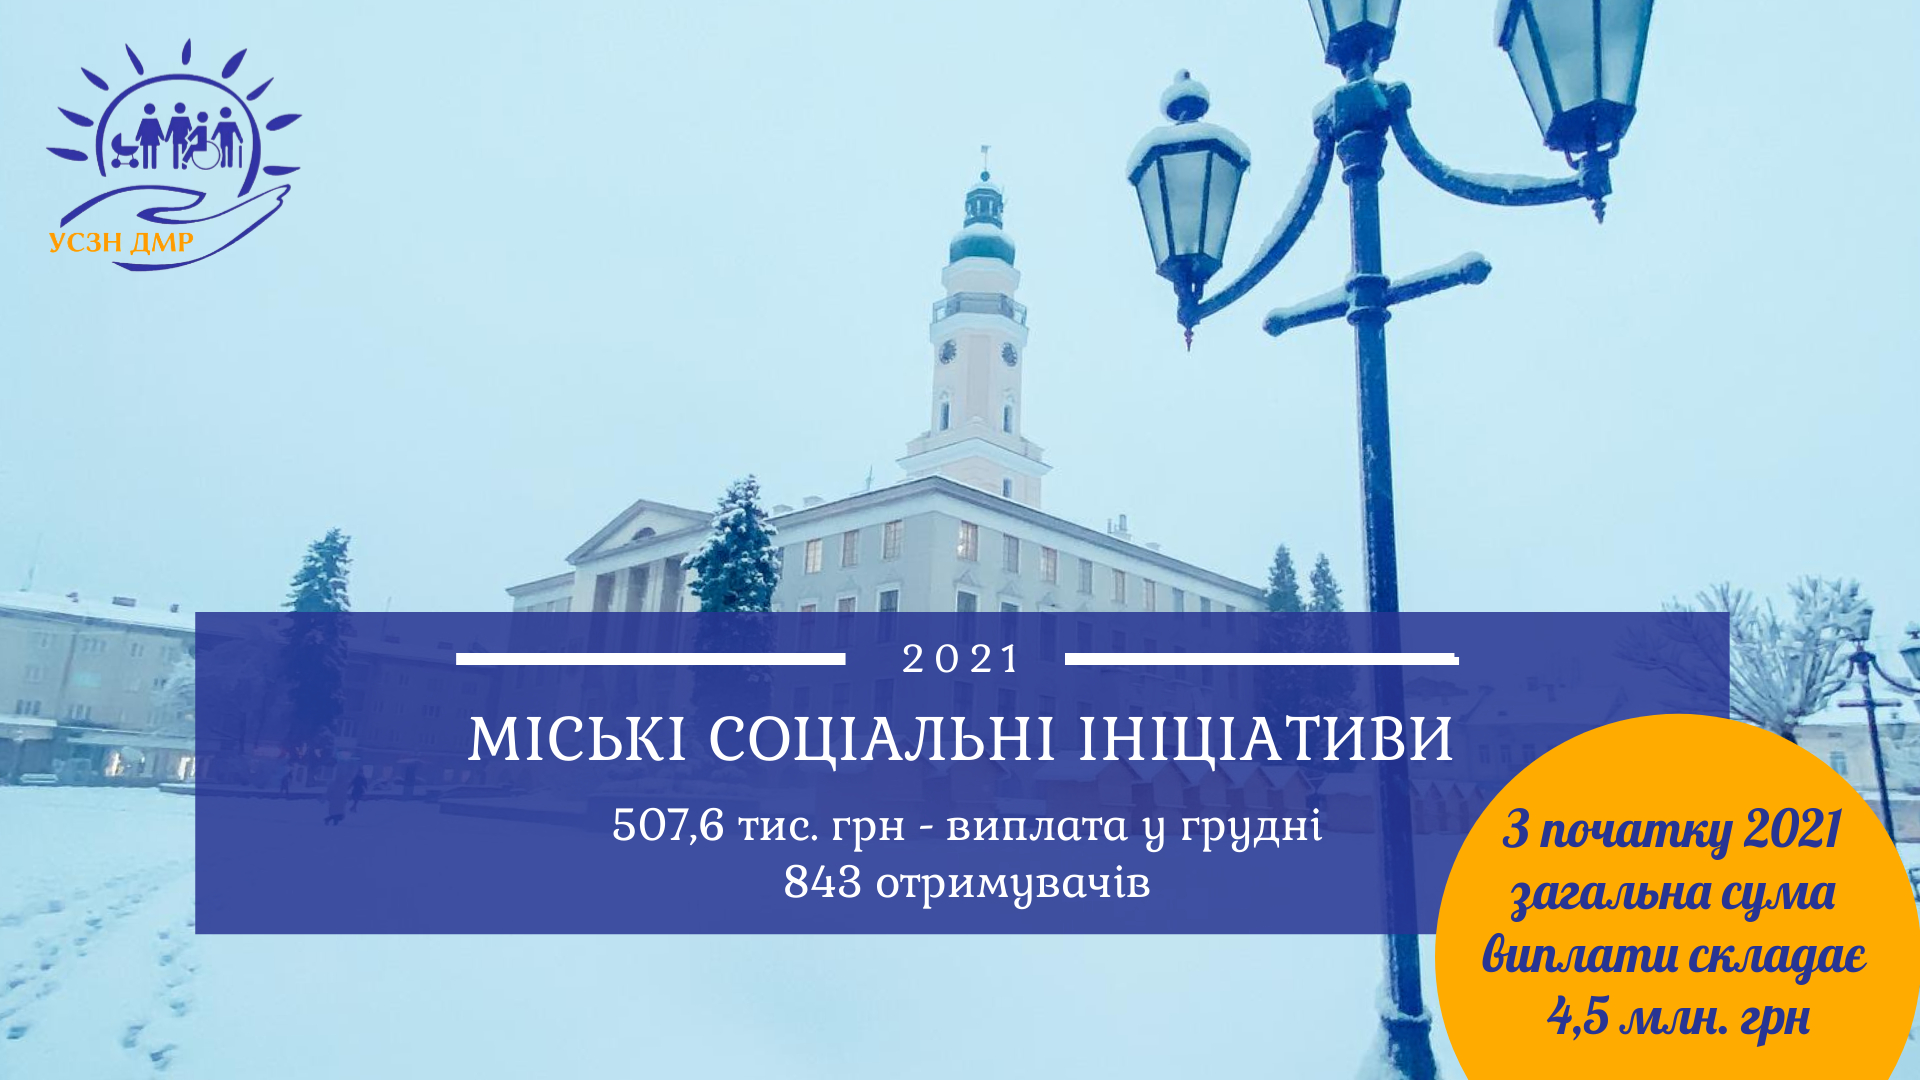 Міські соціальні ініціативи: 507,6 тис. грн перераховано для 843 мешканців Дрогобицької громади у грудні 2021р